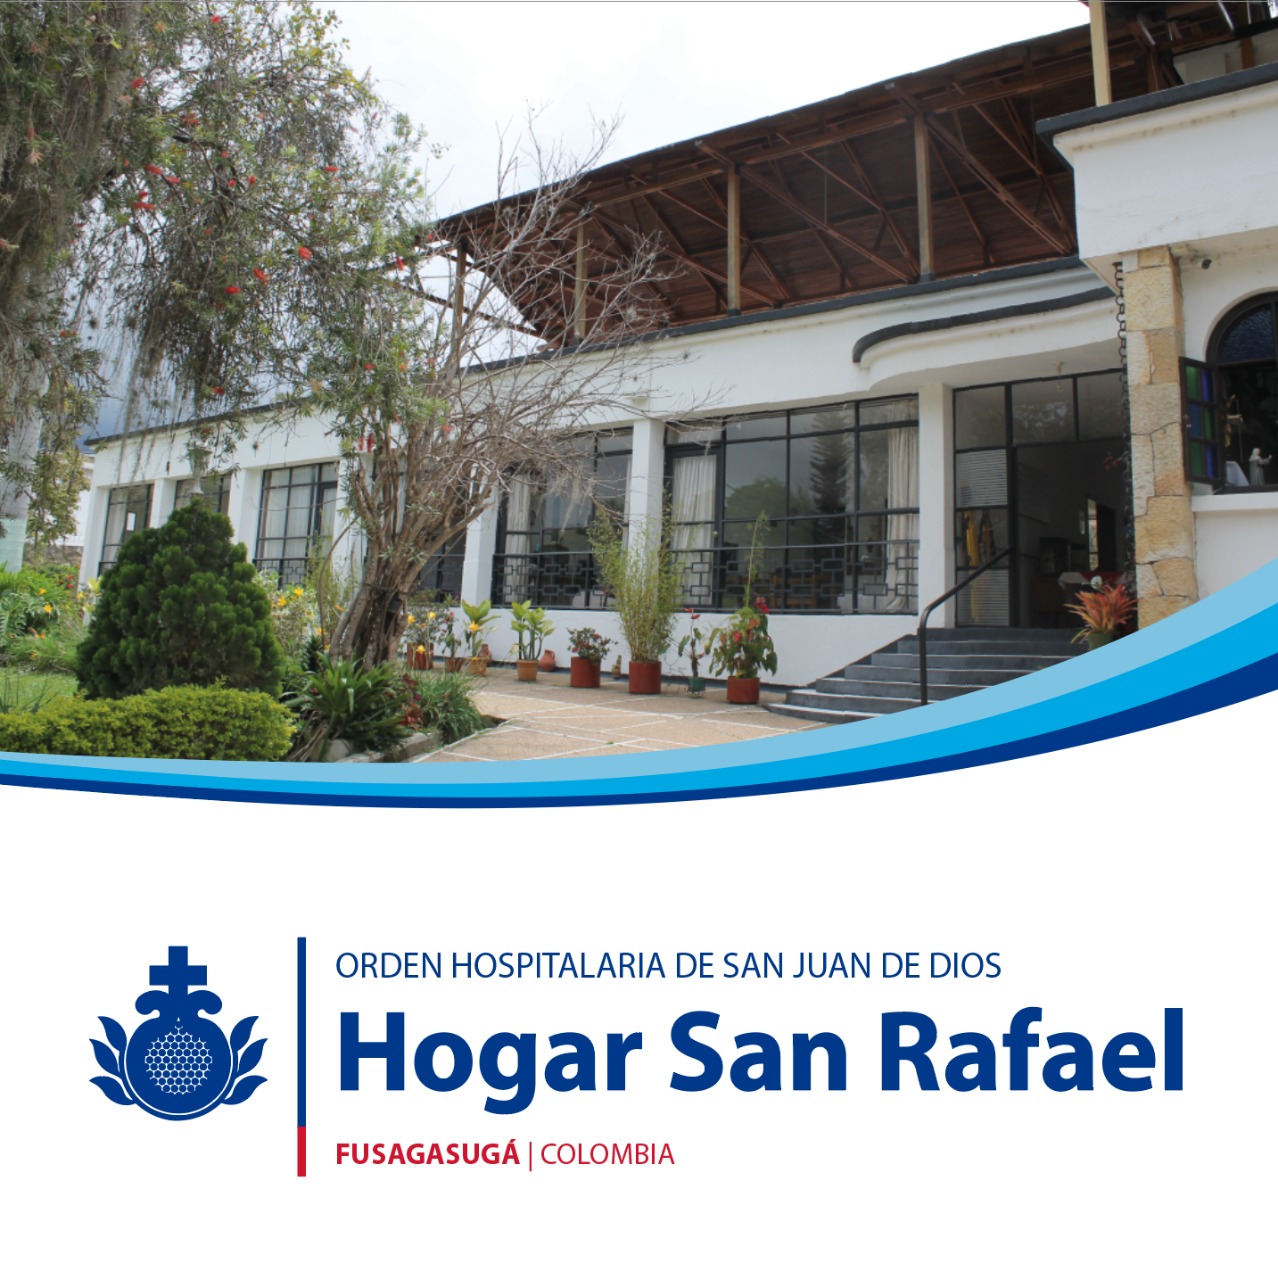 Centro Colombia Hogar San Rafael | Orden Hospitalaria San Juan de Dios